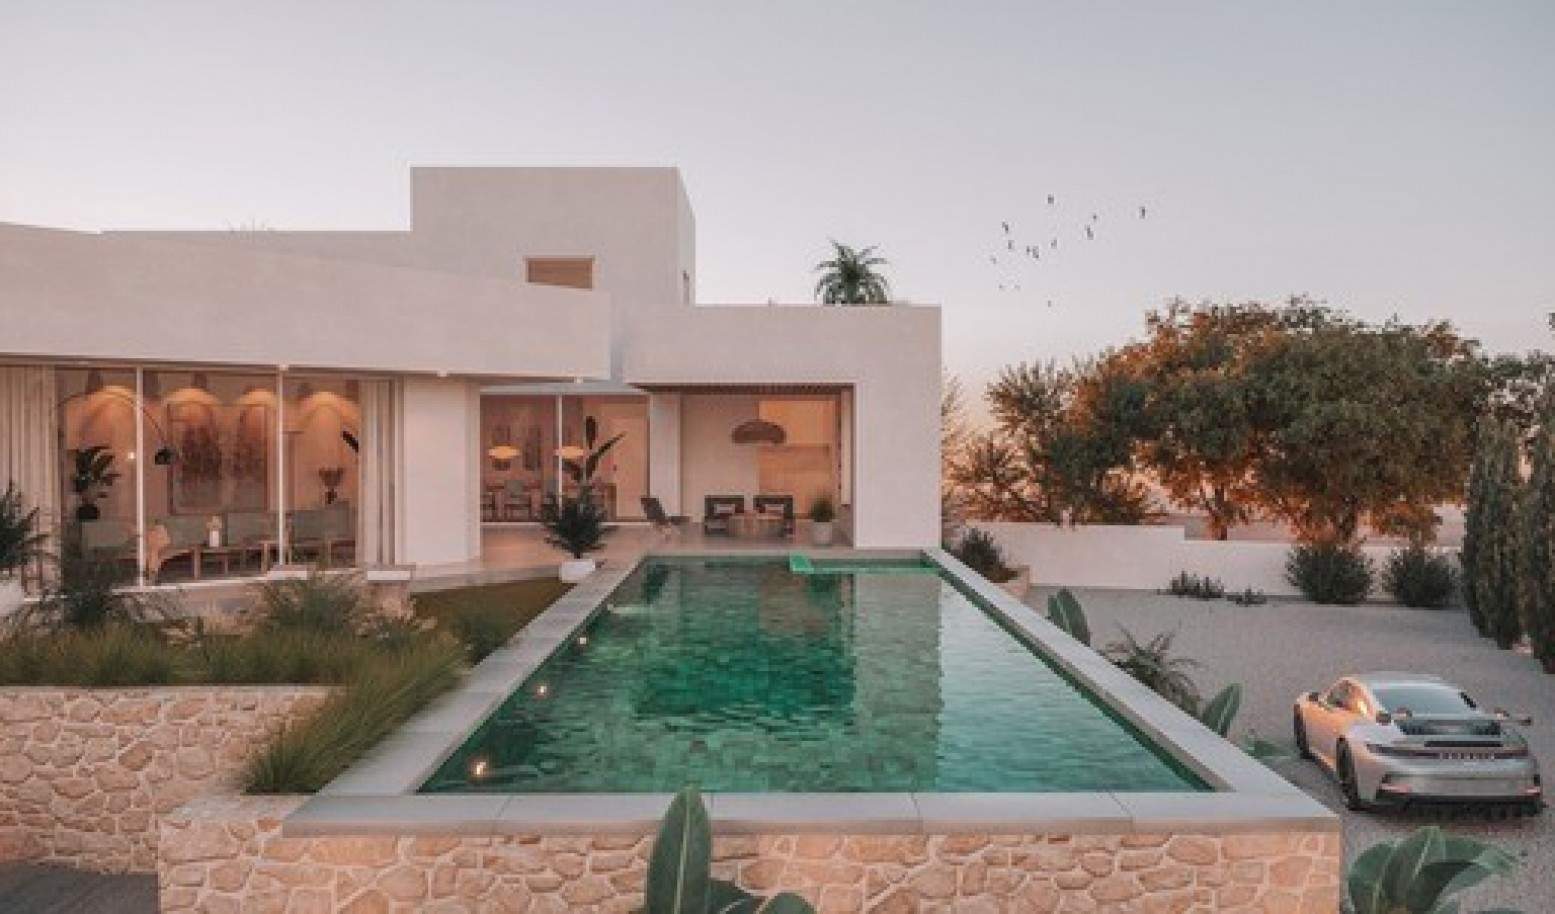 Villa de 4 dormitorios en construcción, en venta en Lagos, Algarve_208679